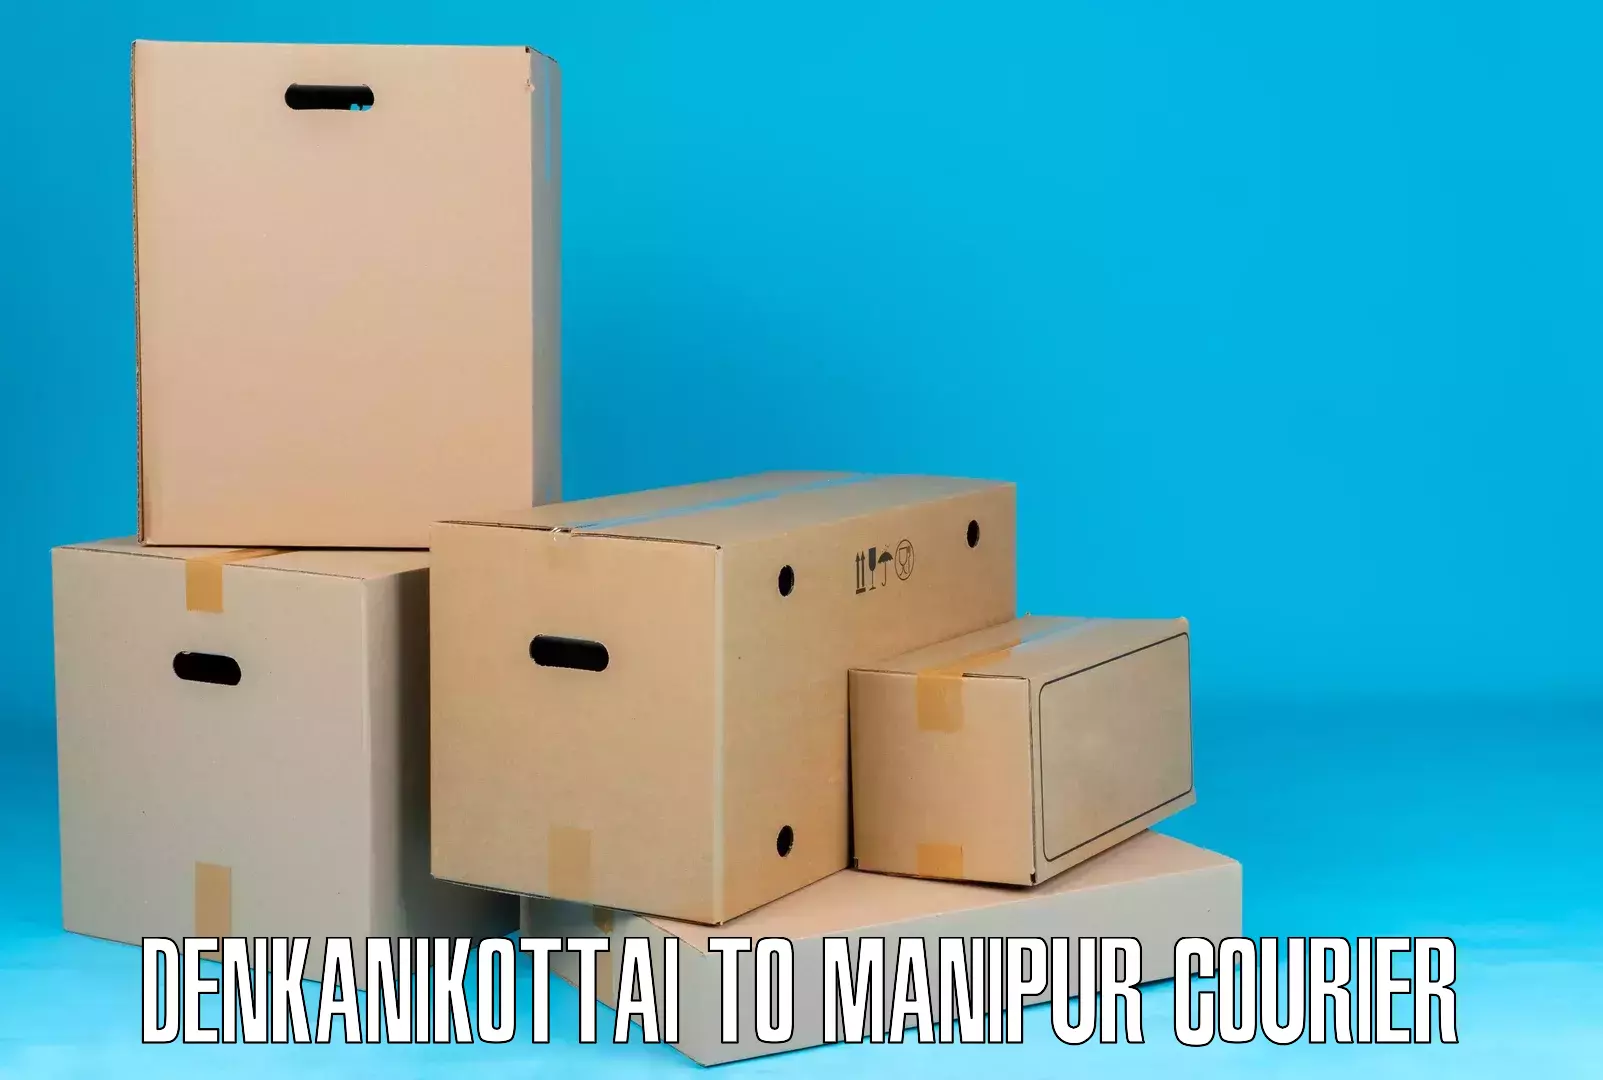 Bulk courier orders Denkanikottai to Manipur